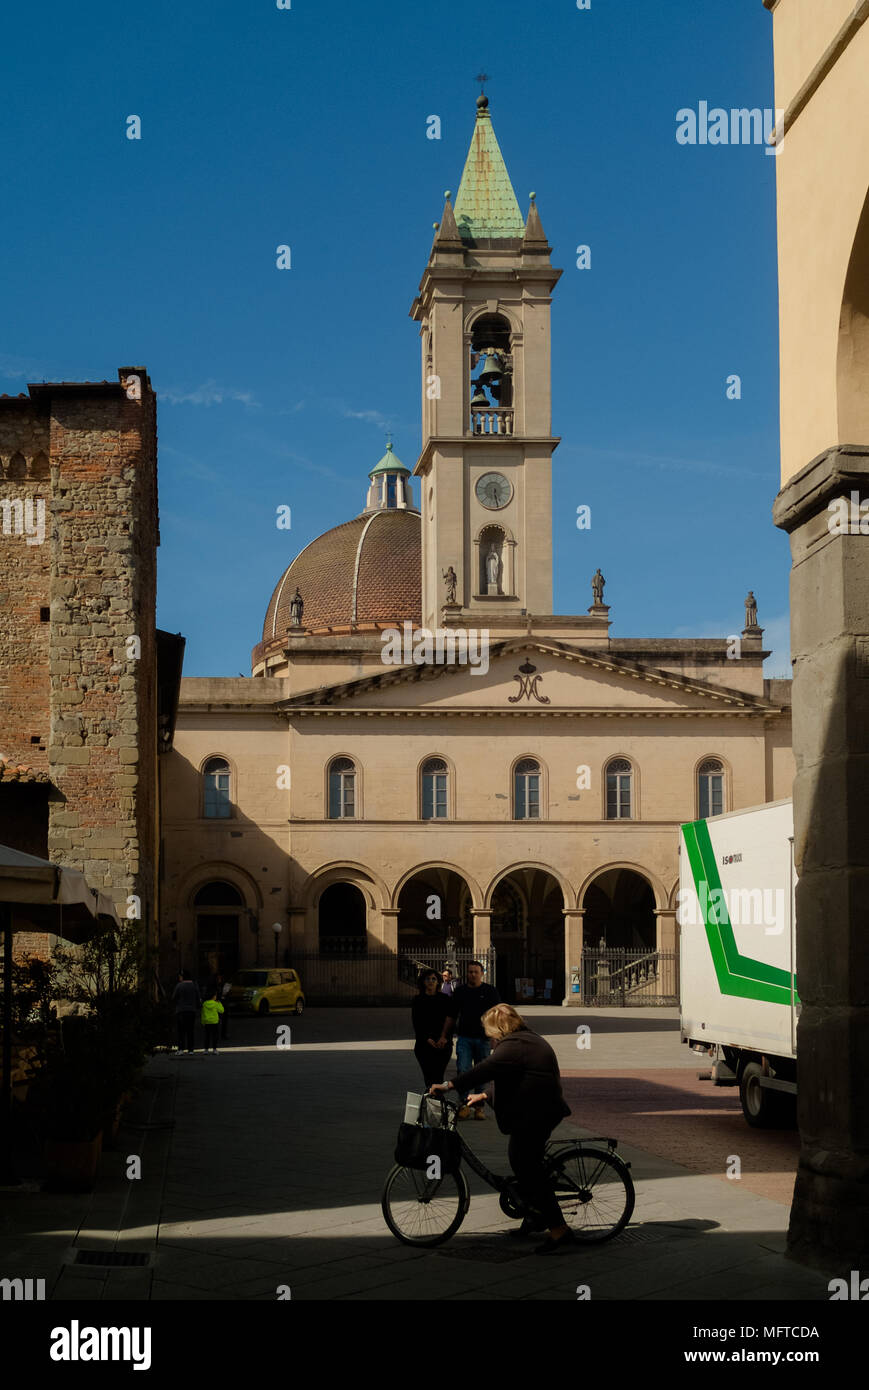 Piazza Masaccio, San Giovanni Valdarno (AR). Tuscany Italy Stock Photo